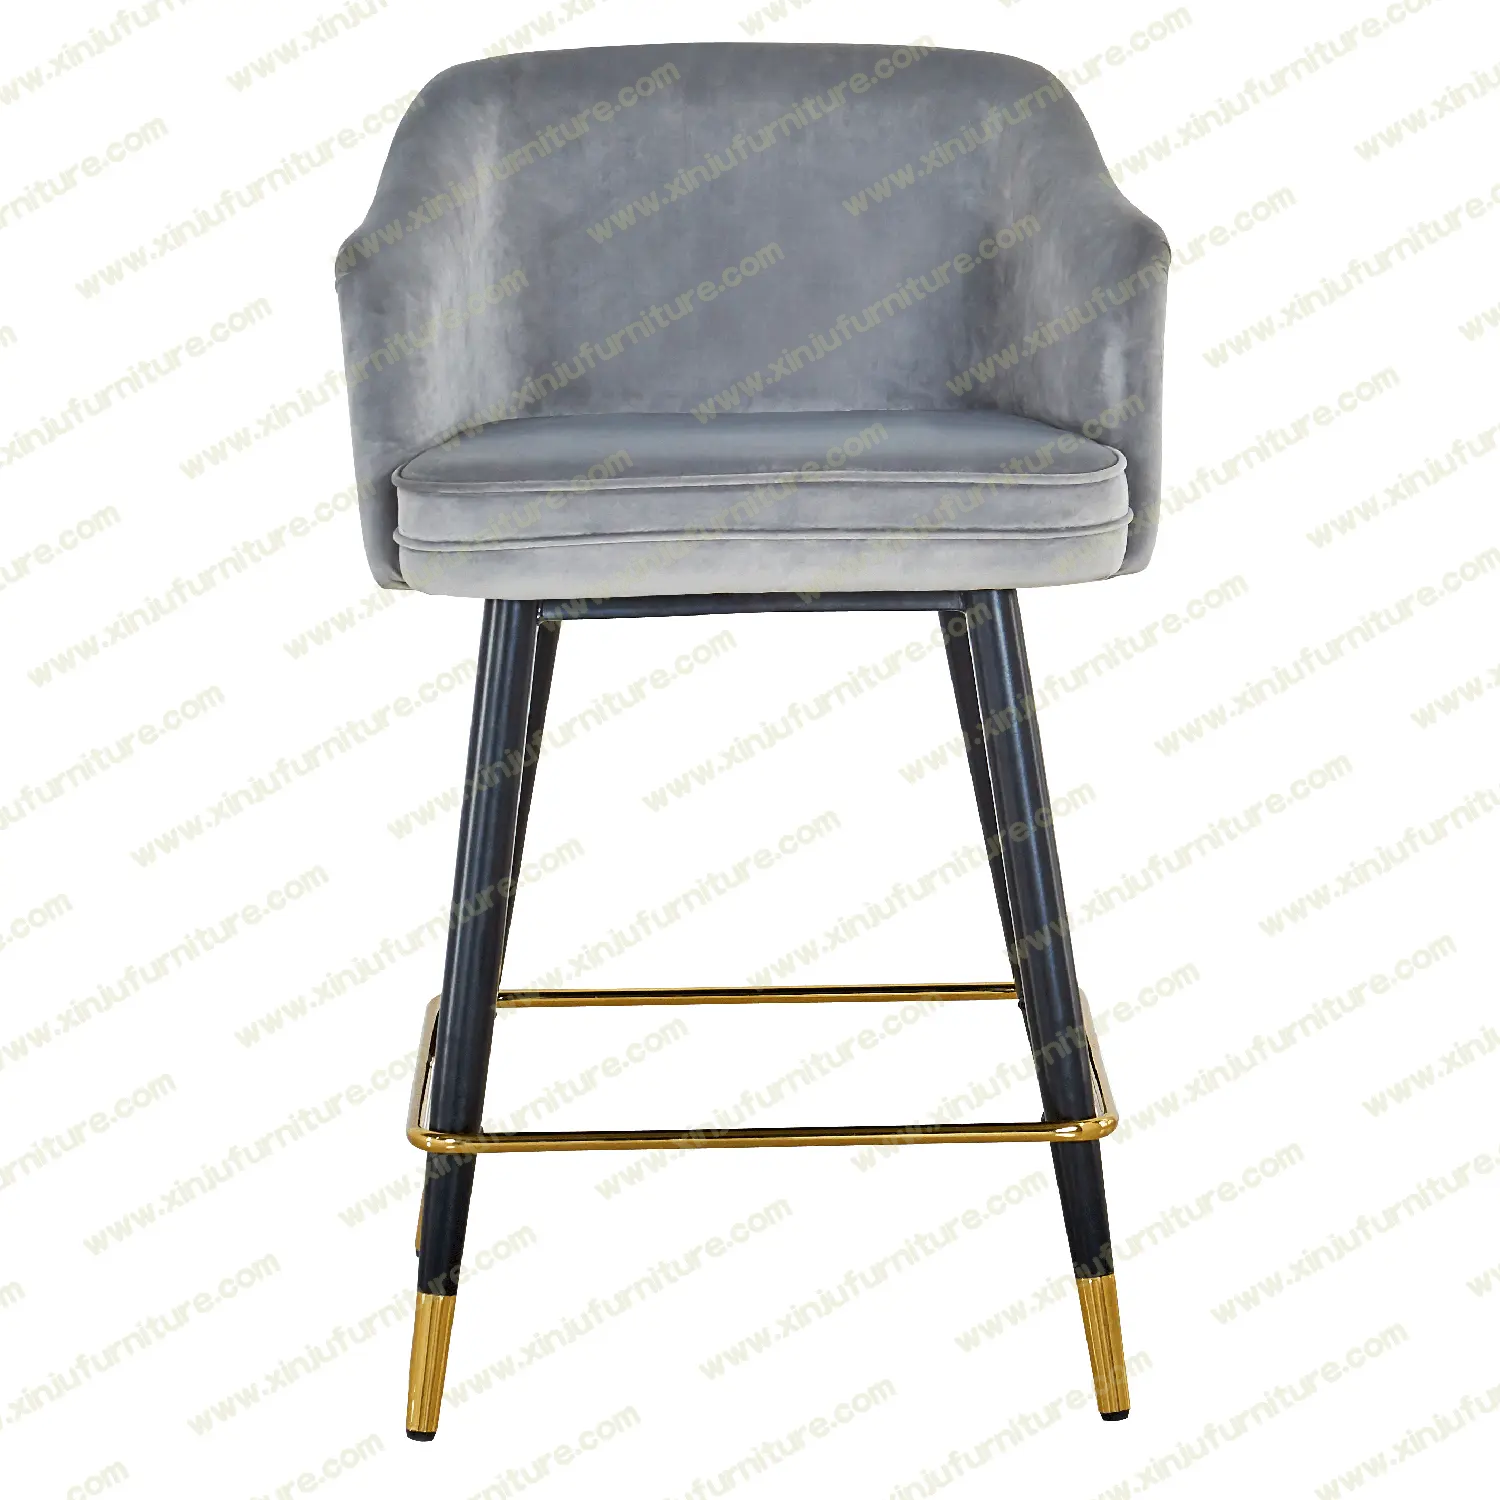 High grade comfortable grey bar chair